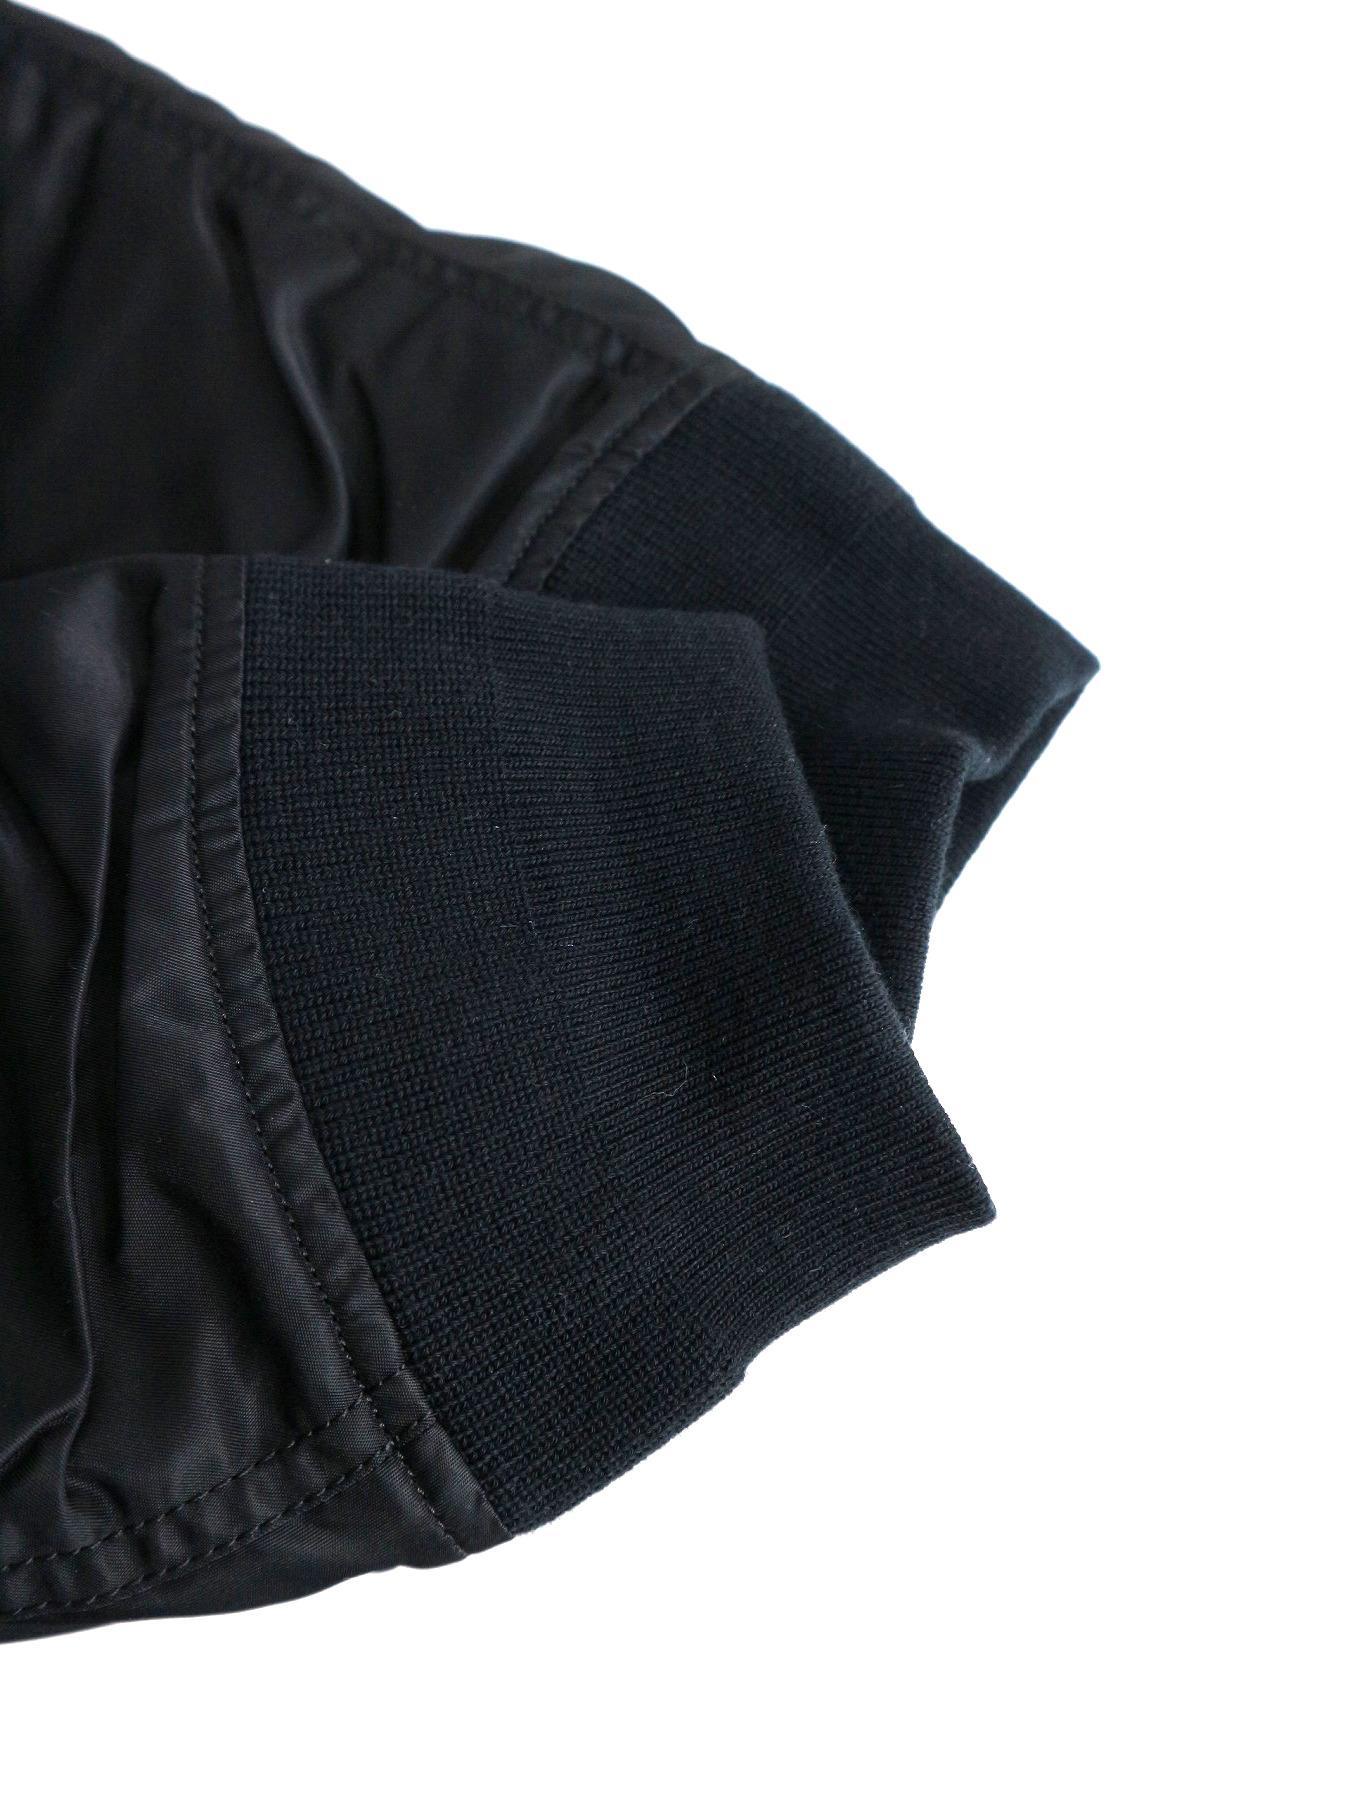 sacai (サカイ) オーバーサイズボンバージャケット ブラック サイズ:3 17-01377M　 17AW ランウェイモデル